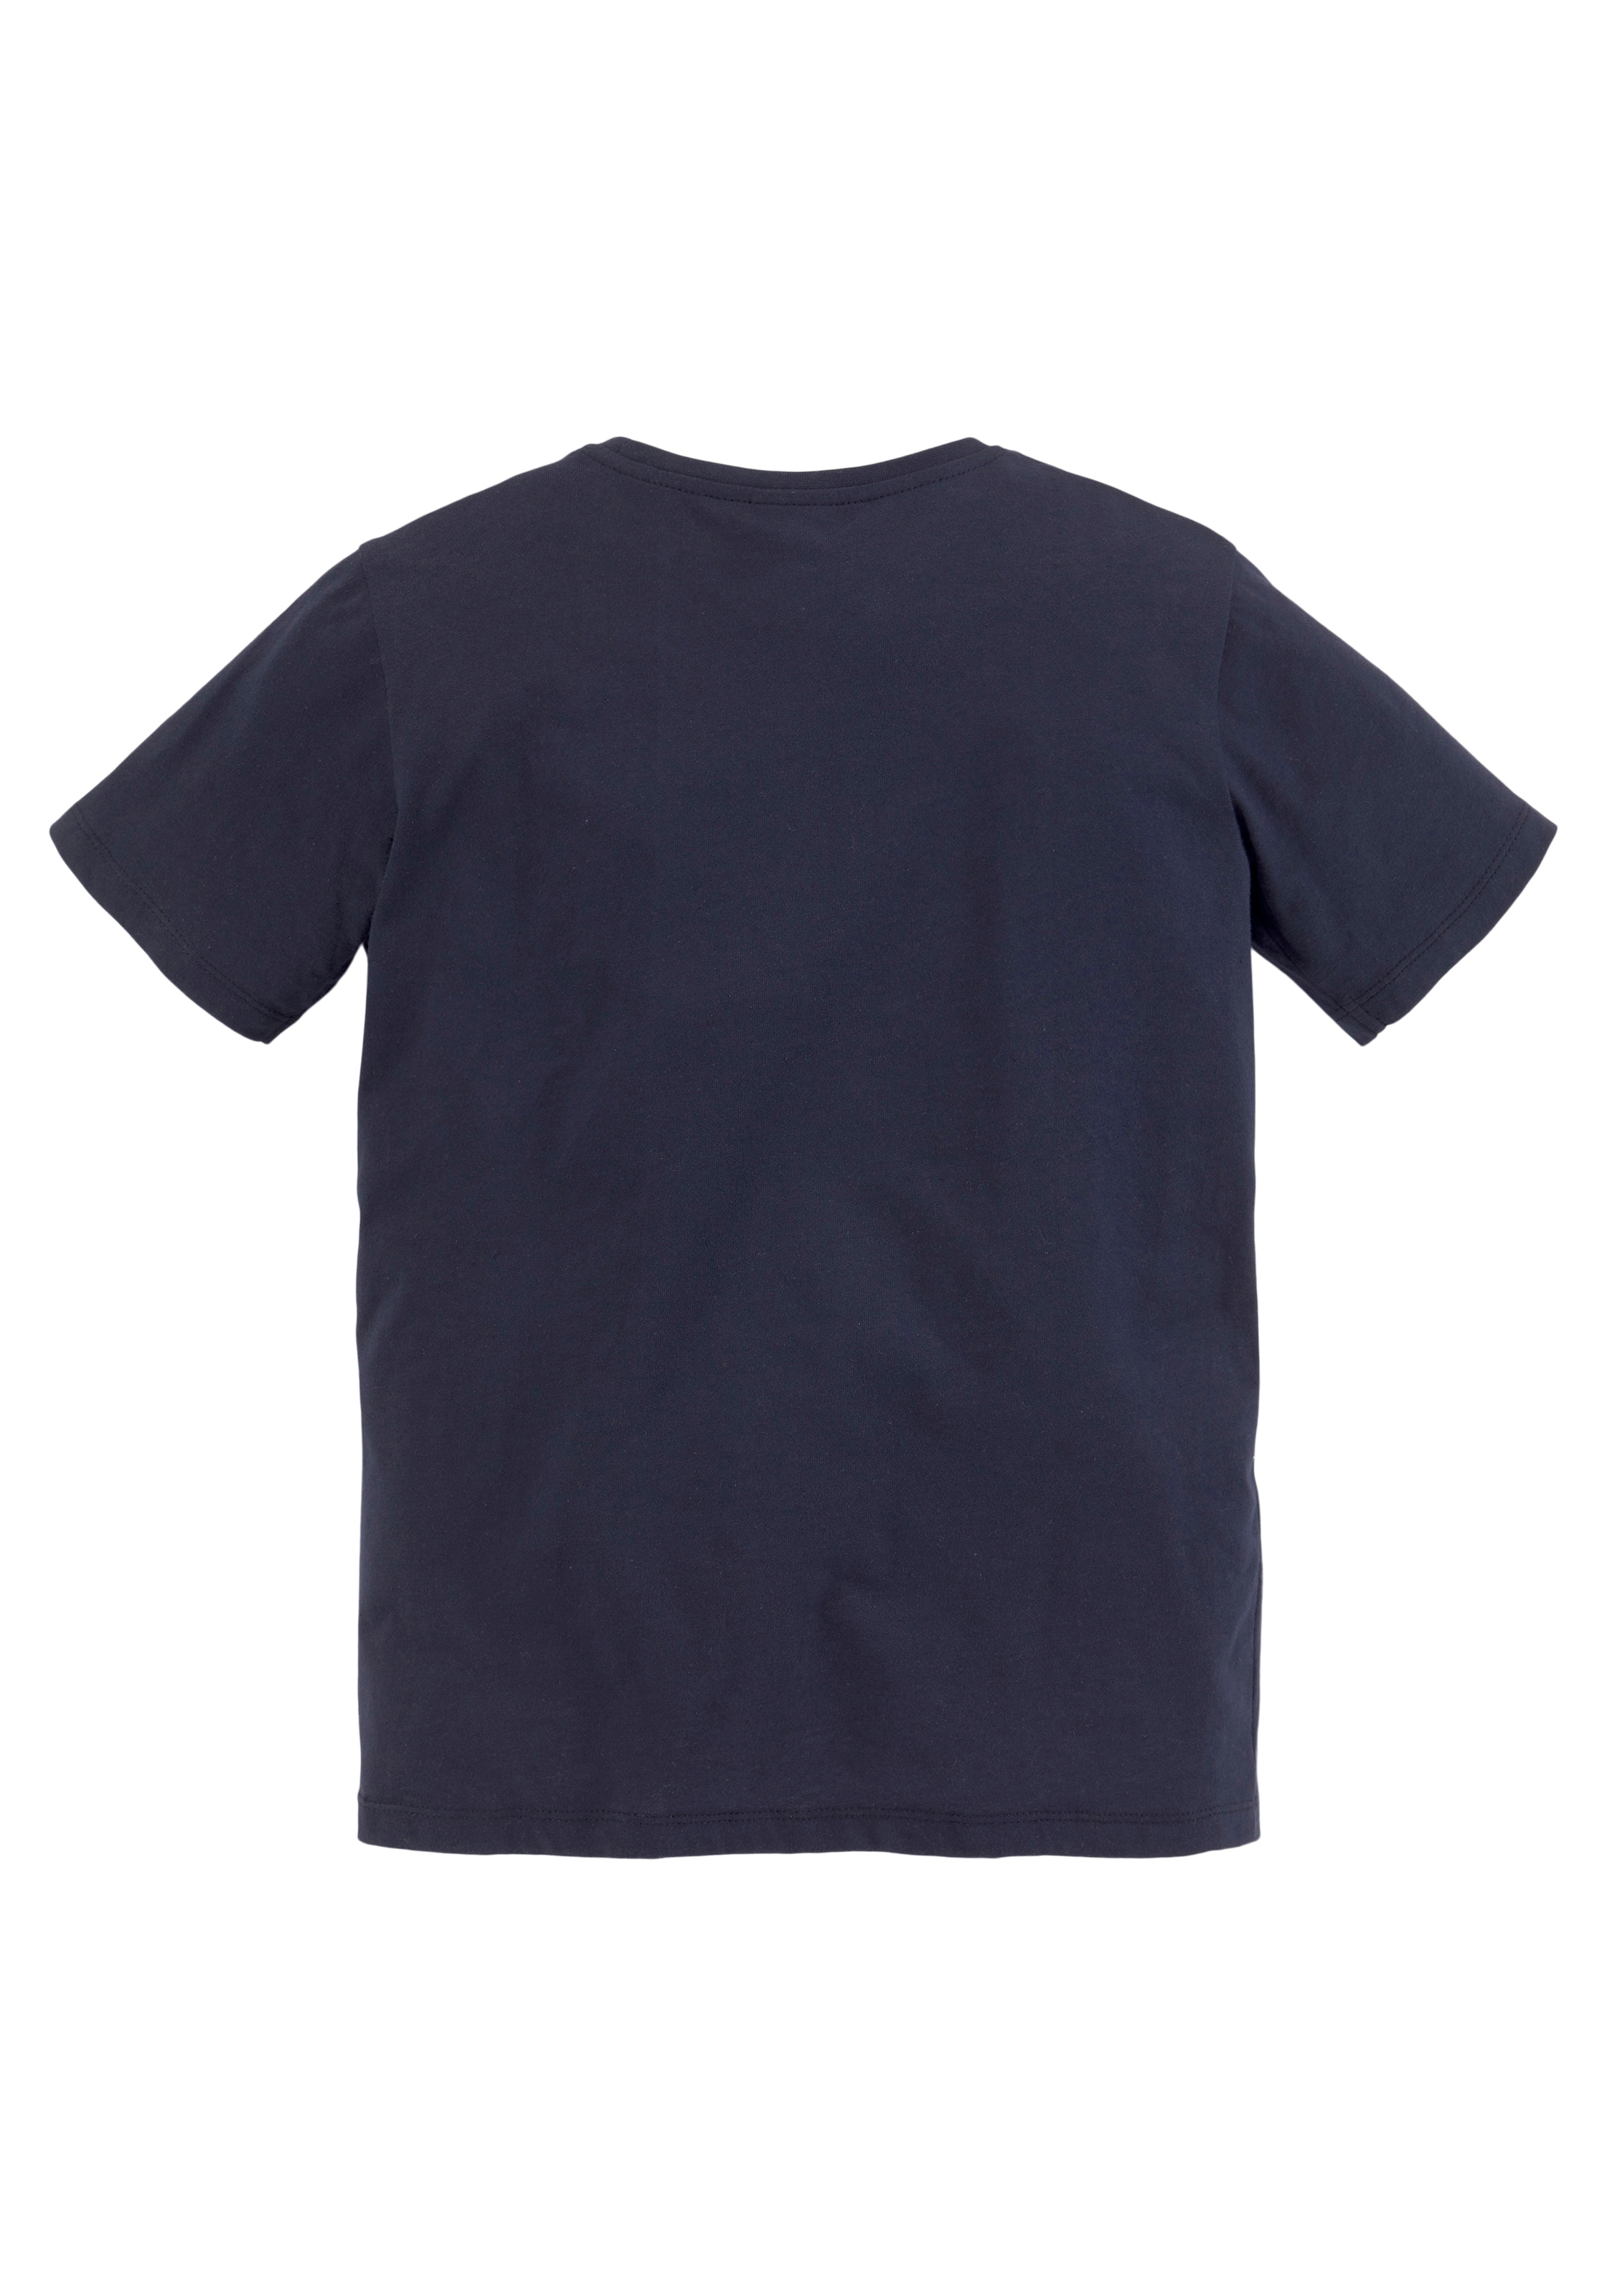 KIDSWORLD T-Shirt & Sweatbermudas, (Set, 2 tlg., 2), BIKER auf Raten kaufen